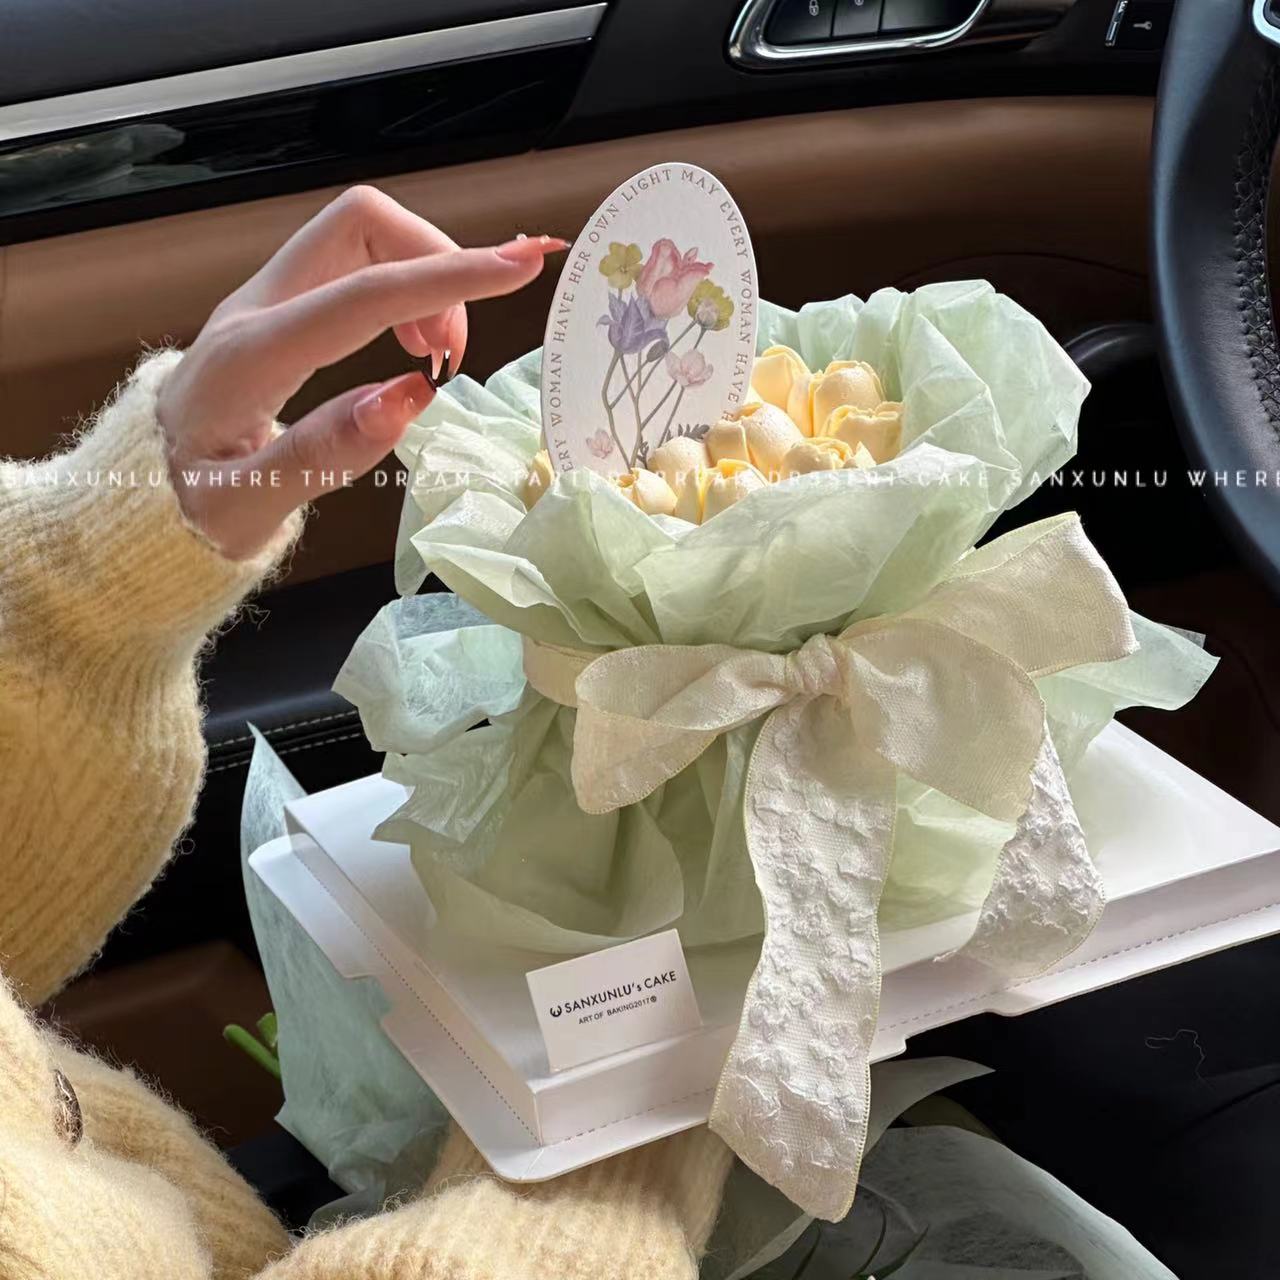 母亲节女神浅绿色雪梨包装纸花束蛋糕装饰母亲节郁金香烘焙插件